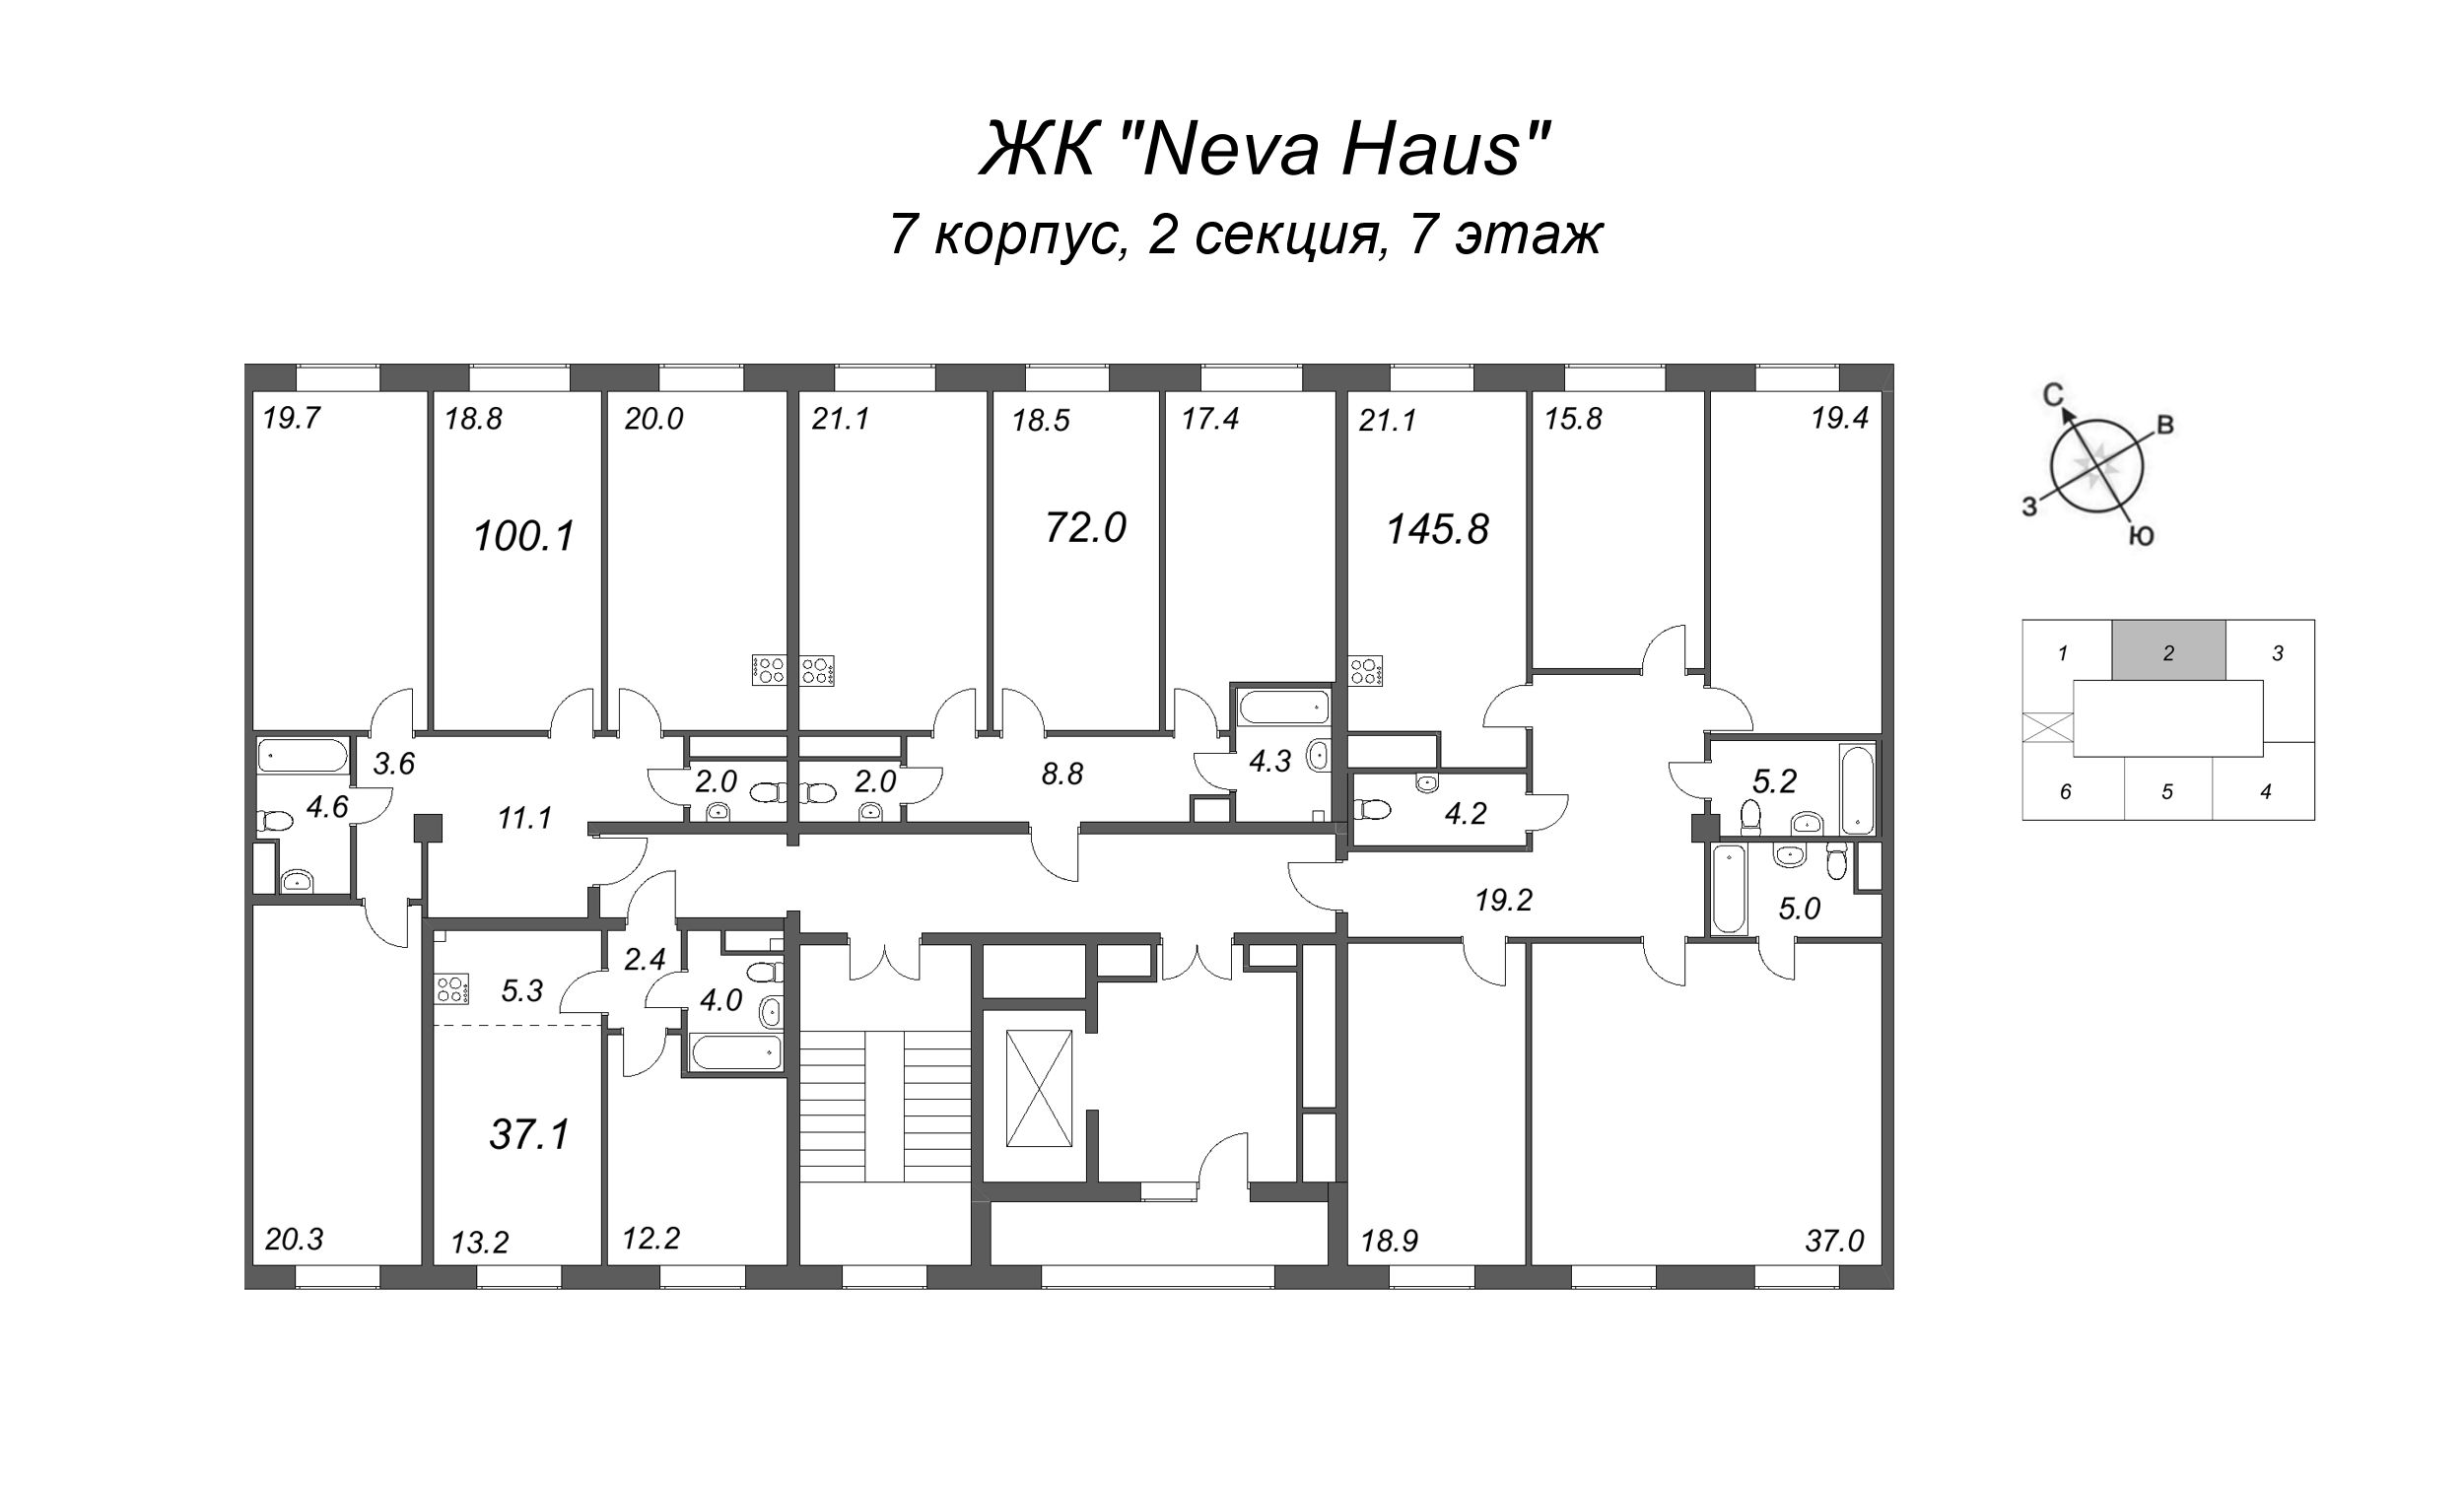 4-комнатная (Евро) квартира, 100.6 м² в ЖК "Neva Haus" - планировка этажа